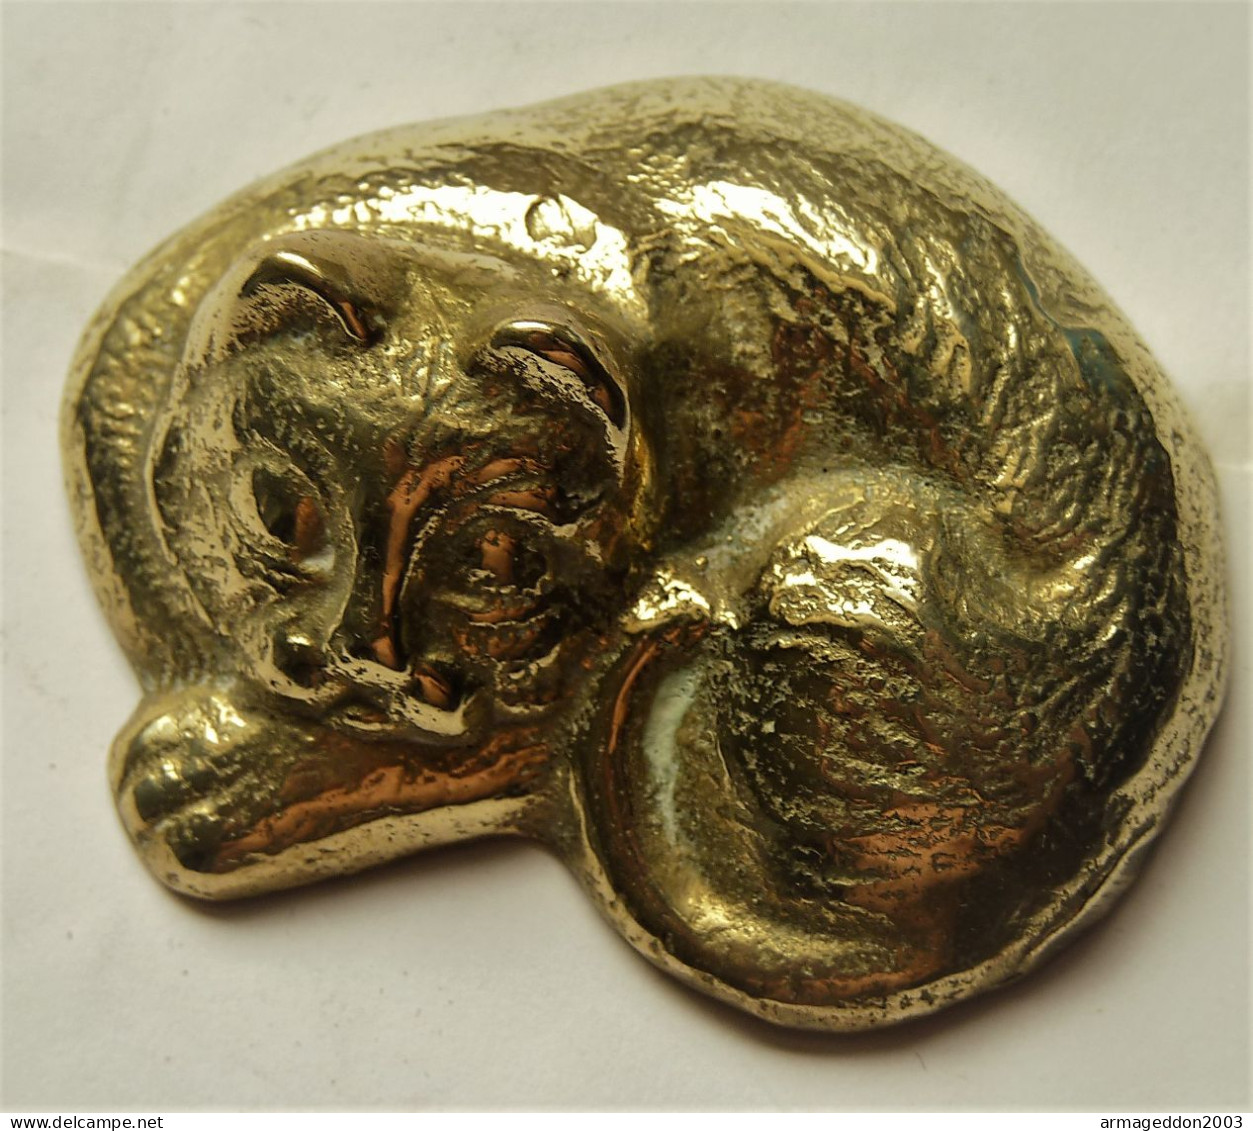 ANCIENNE PETITE SCULPTURE PETIT CHAT QUI EST ALLONGE EN BRONZE OU LAITON TBE - Bronzes